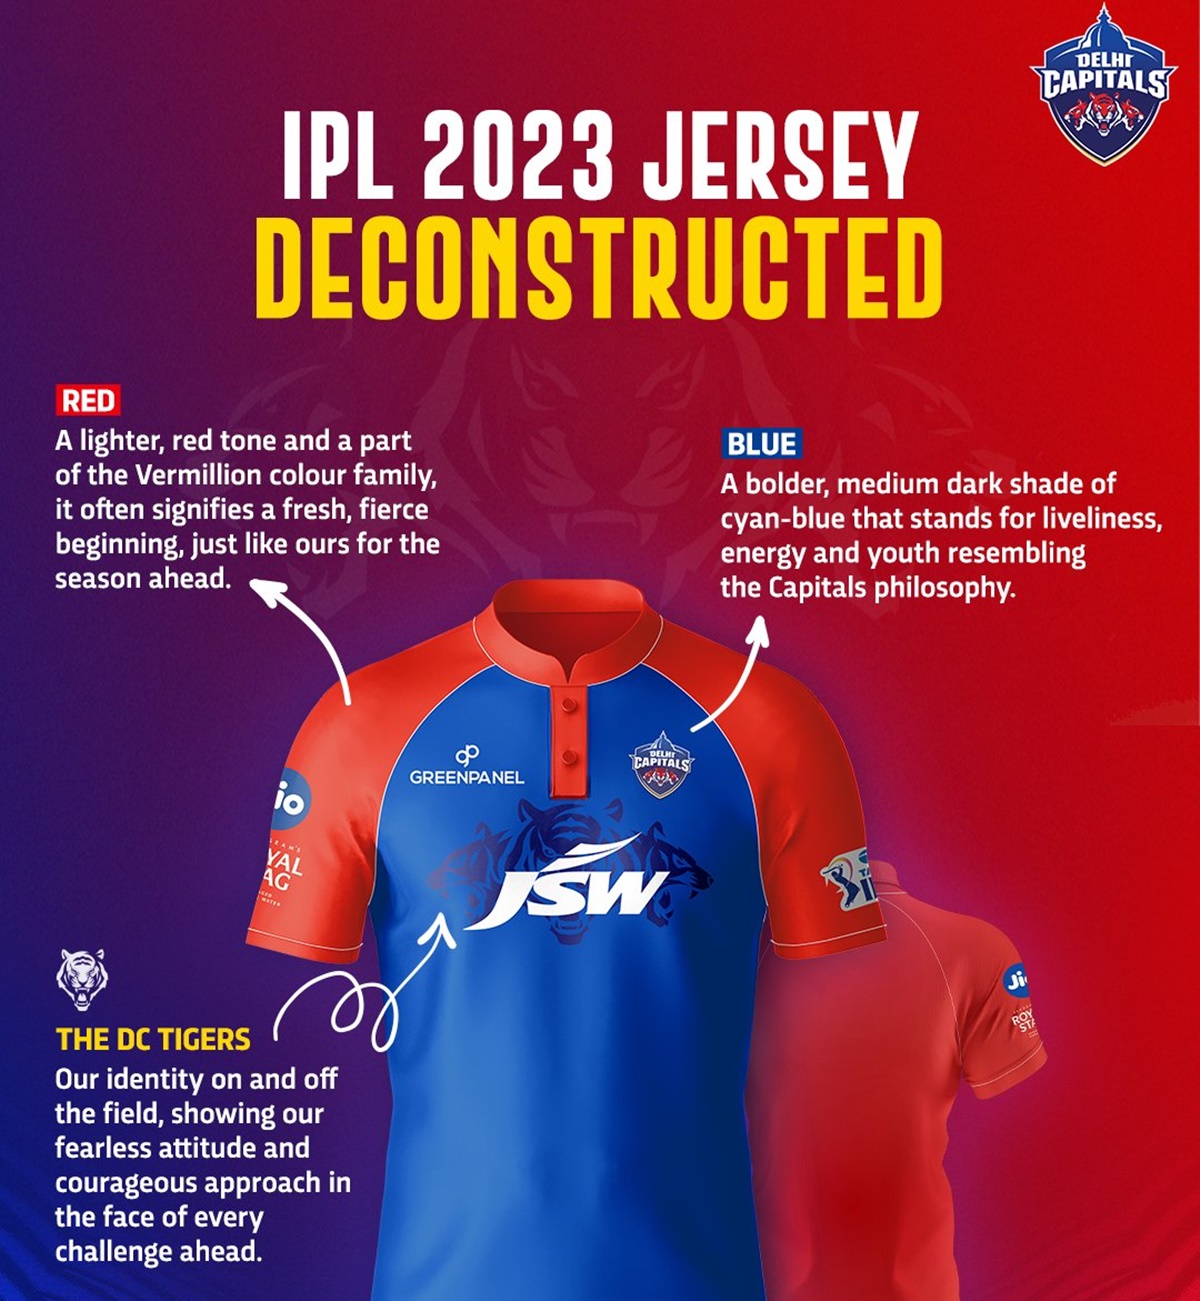 IPL 2023: Delhi Capitals unveil new jersey ahead of upcoming season